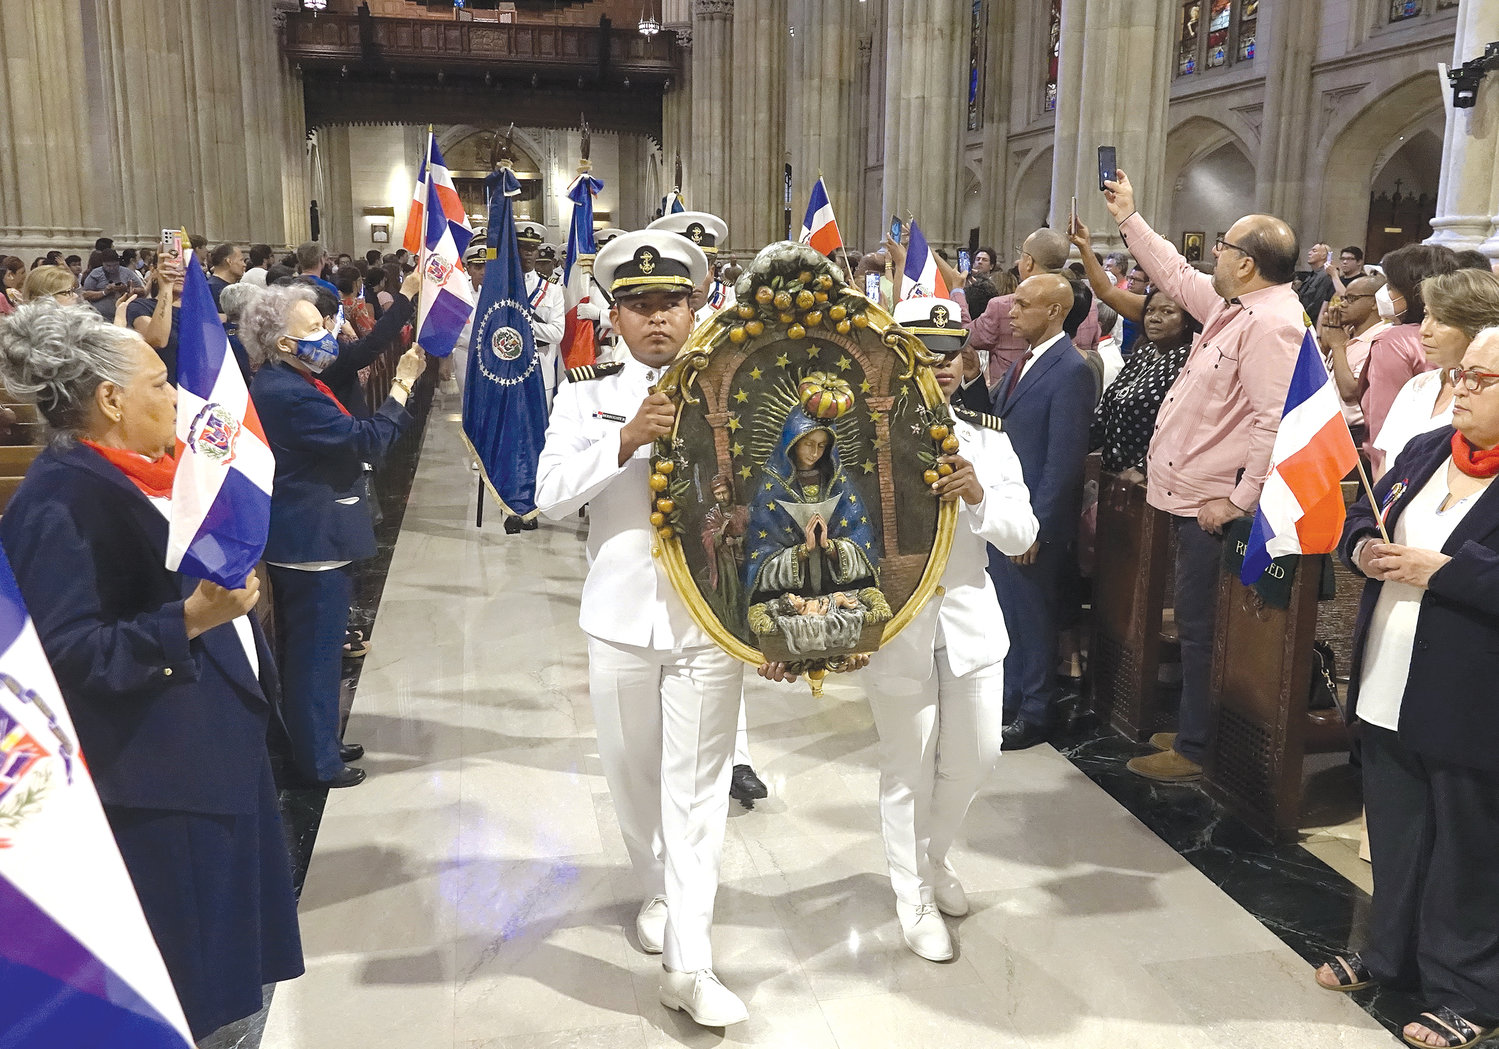 La procesión de entrada, incluyó una imagen de Nuestra Señora de la Altagracia y cadetes y oficiales de la Marina de la República Dominicana.